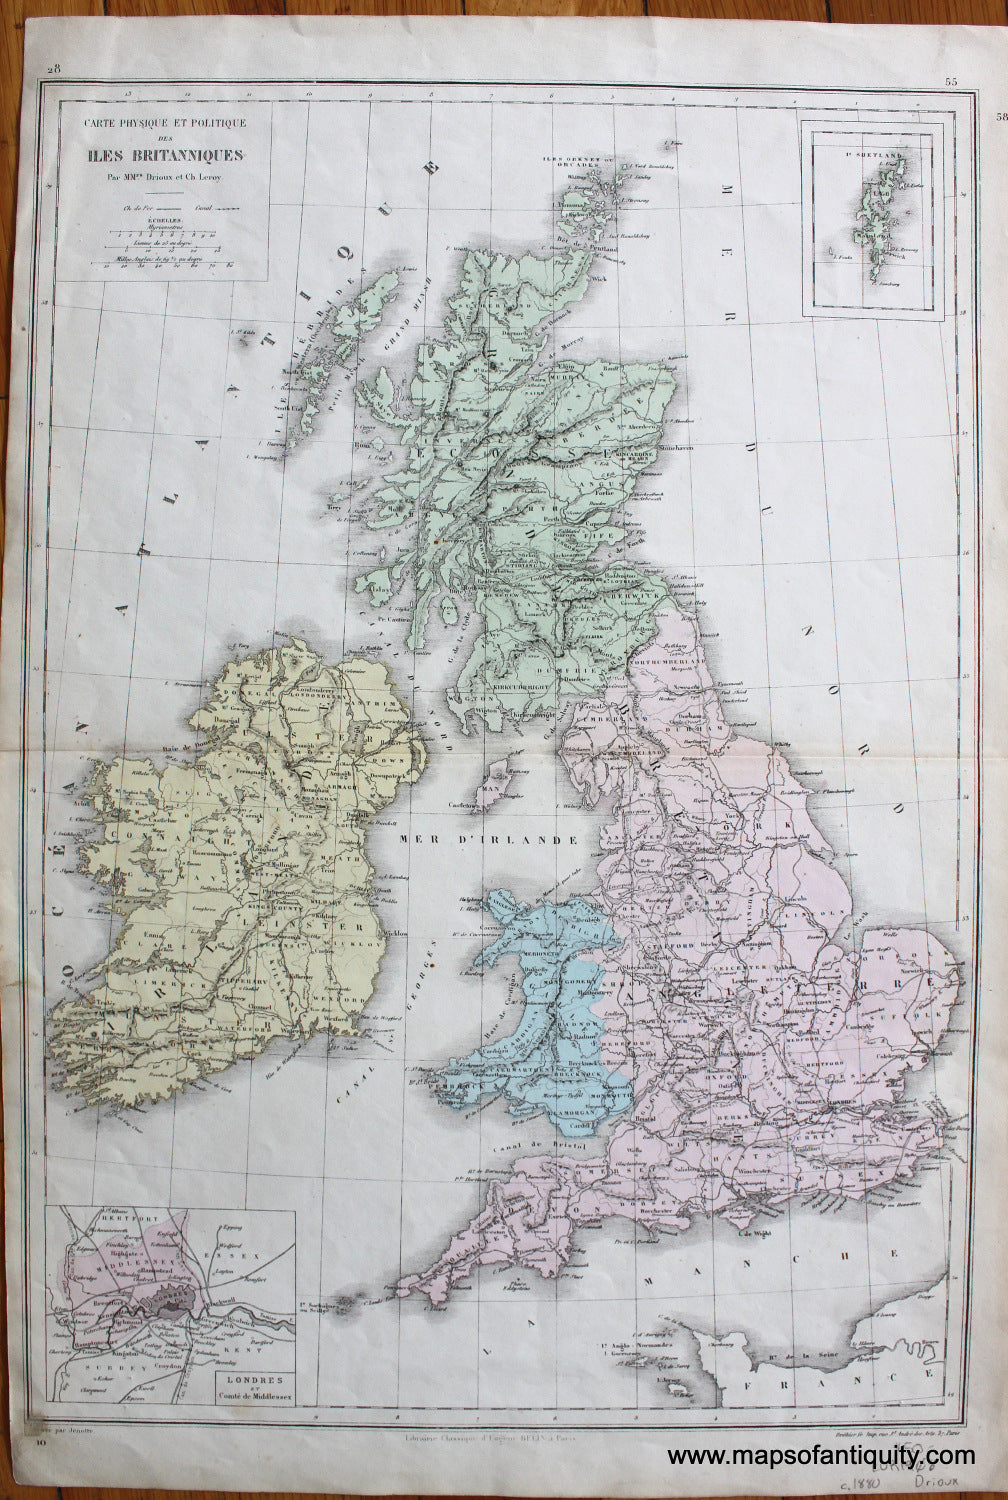 Antique-Hand-Colored-Map-Carte-Physique-et-Politique-des-Iles-Britanniques-Europe-England-c.-1880-Drioux-Maps-Of-Antiquity